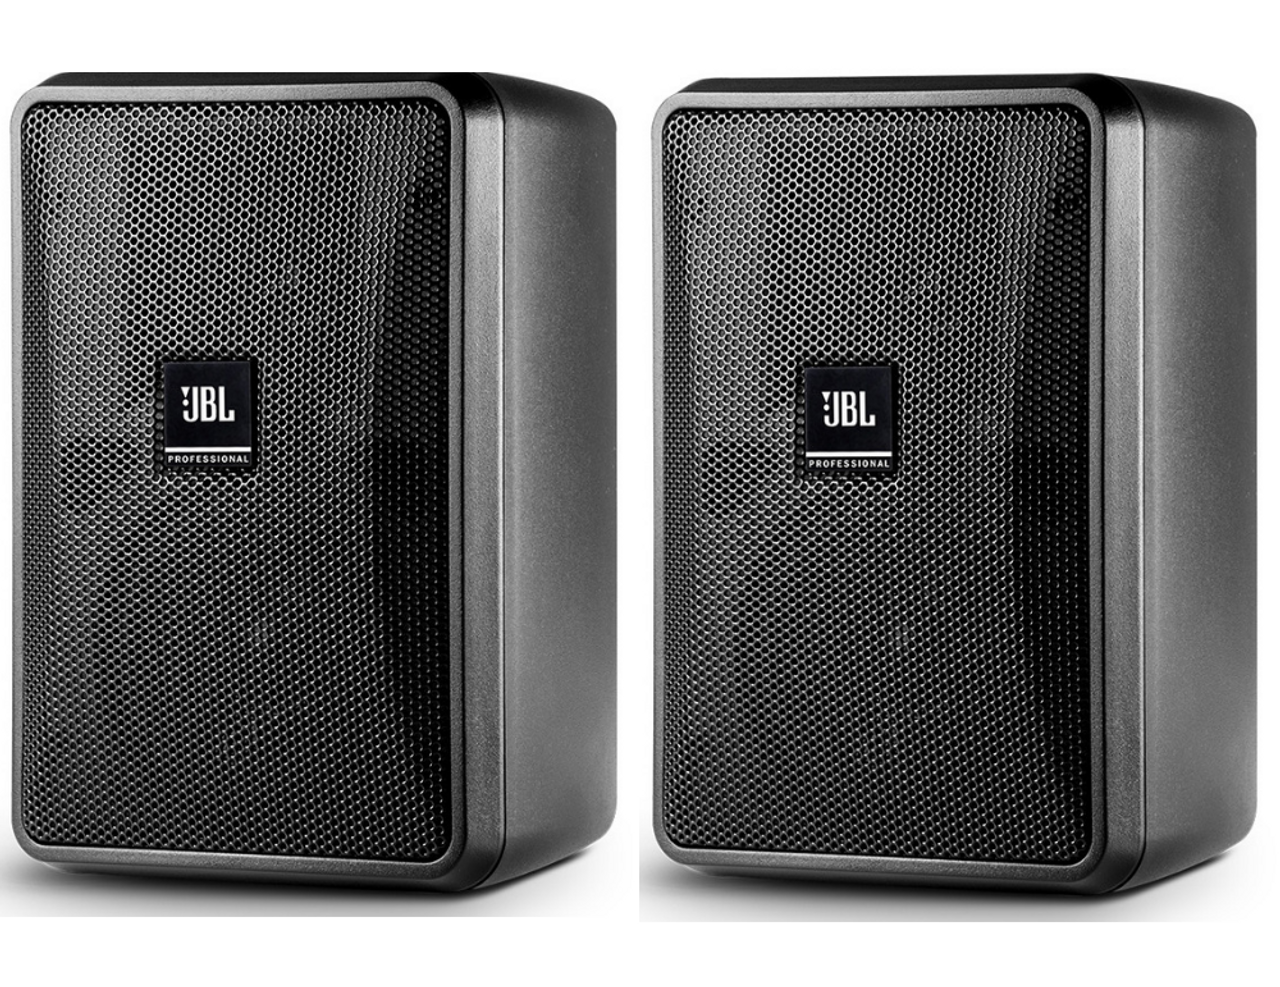 dræne Opsætning Virus JBL Control 23-1 Speakers with Built-In Wall Mount - BLACK (pair)